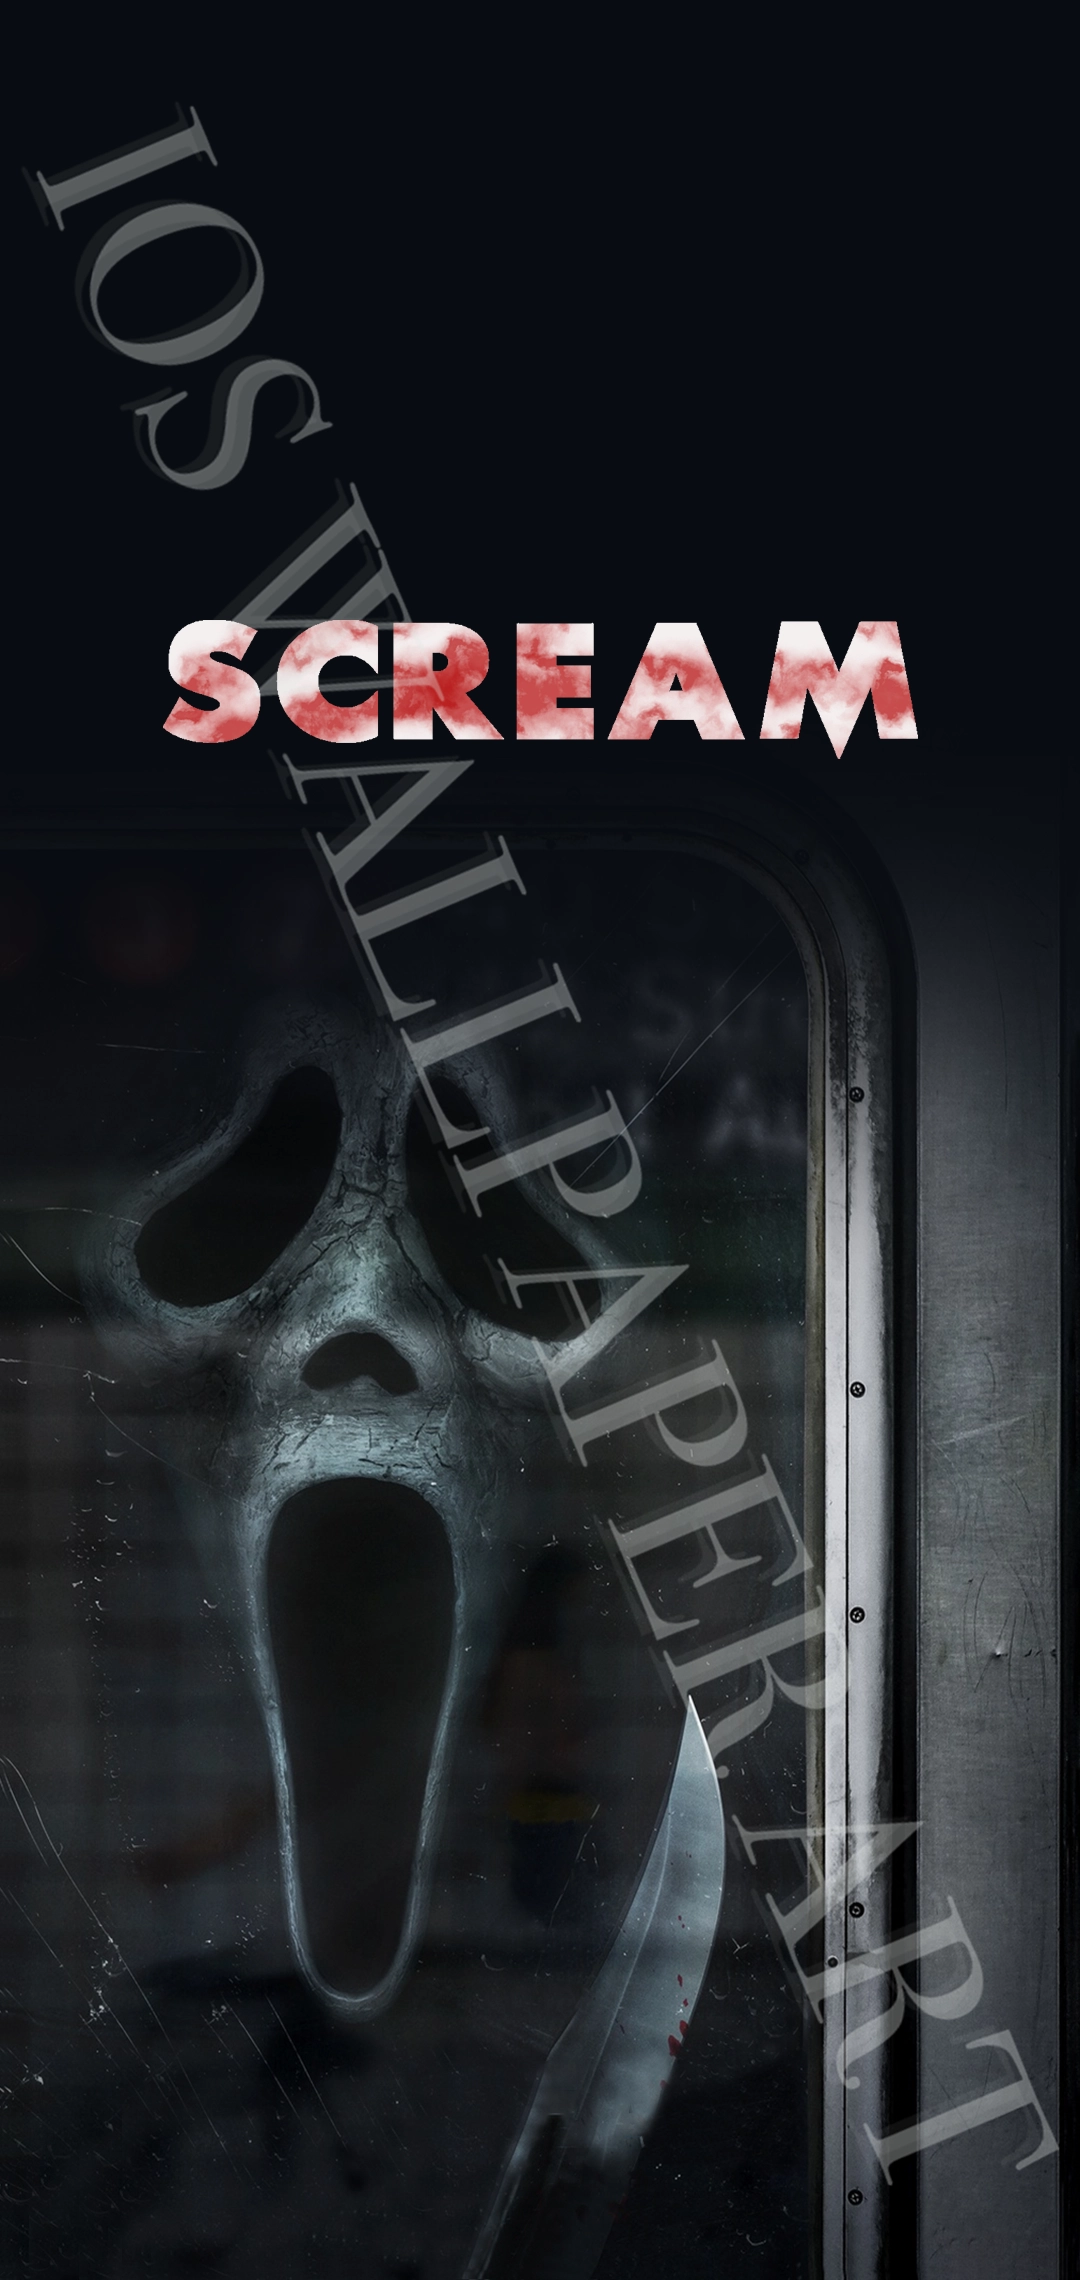  Scream 6 ansehen